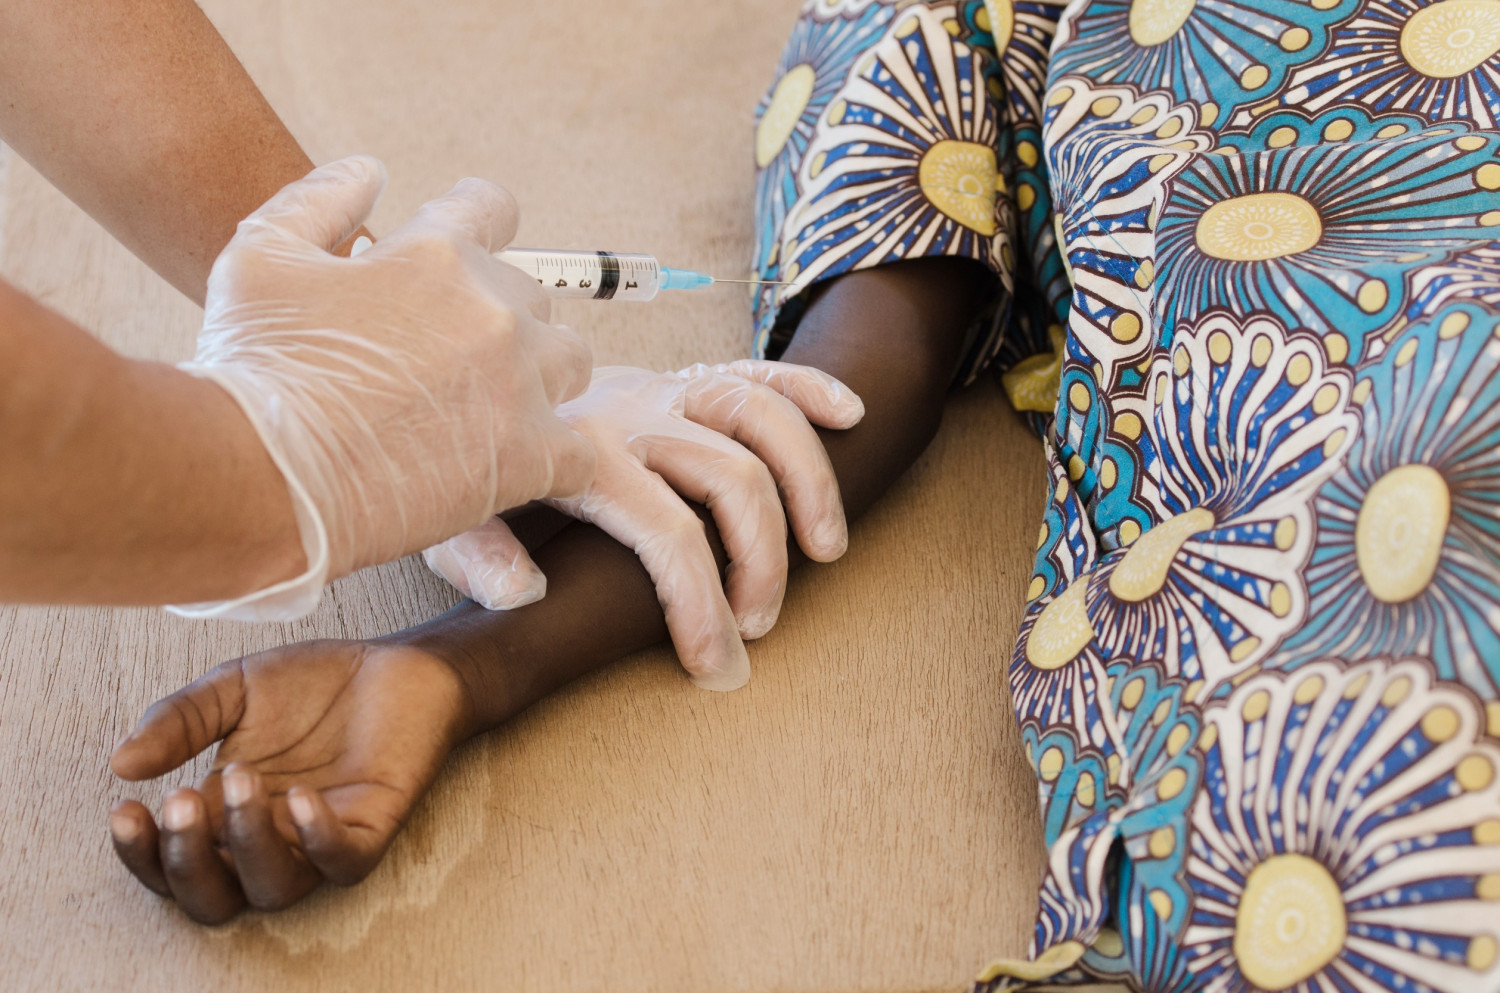 Нигерия первой в мире одобрила применение новой вакцины от менингита